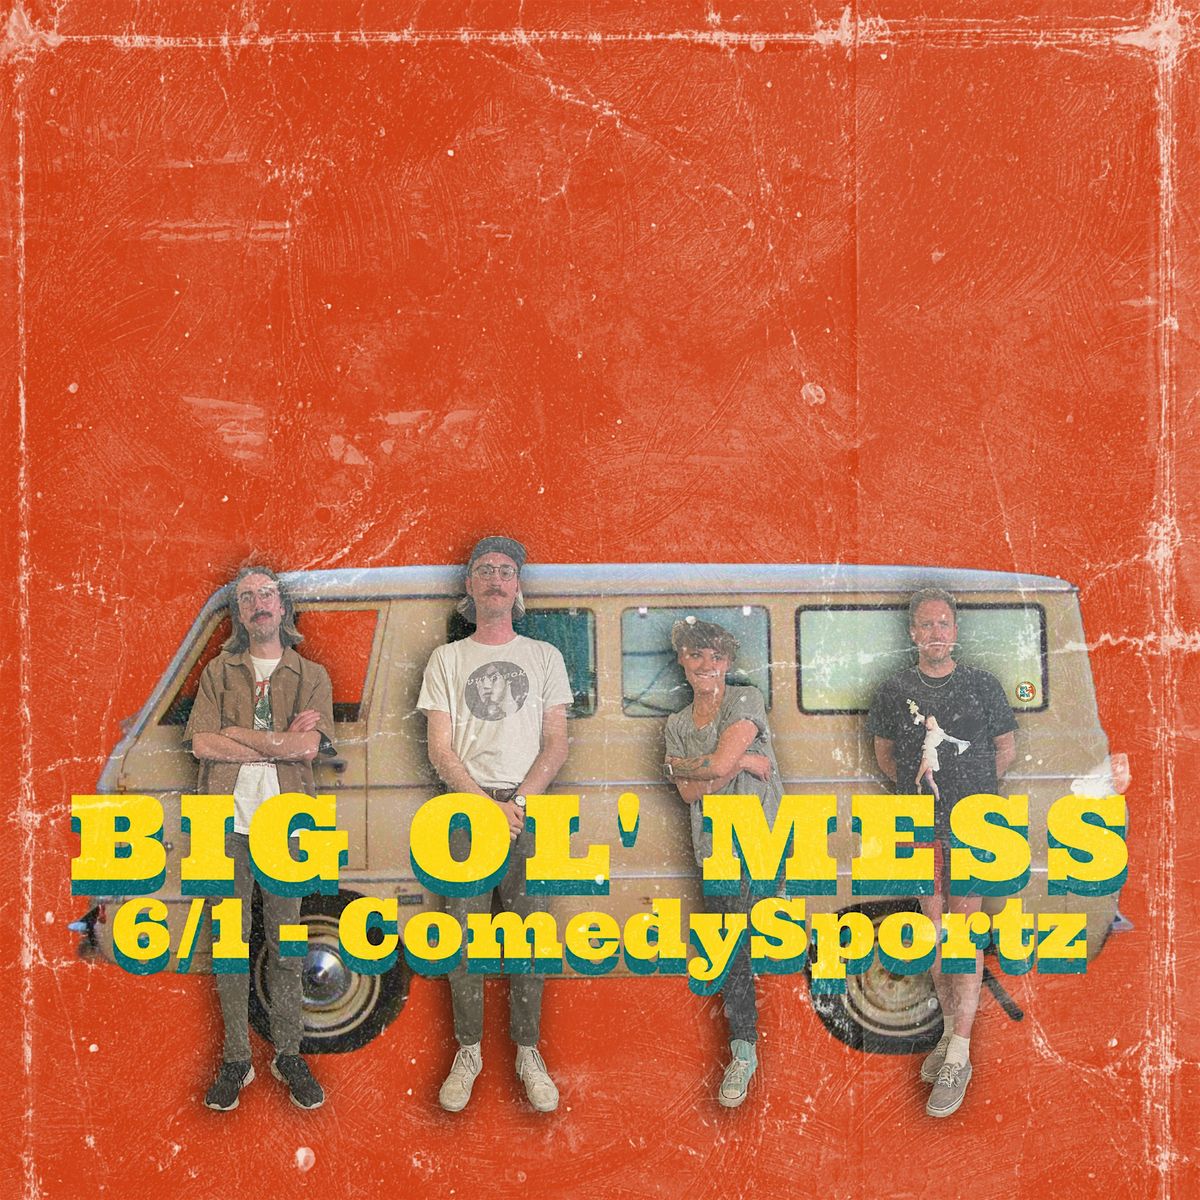 Big Ol' Mess - Live Sketch Comedy Show